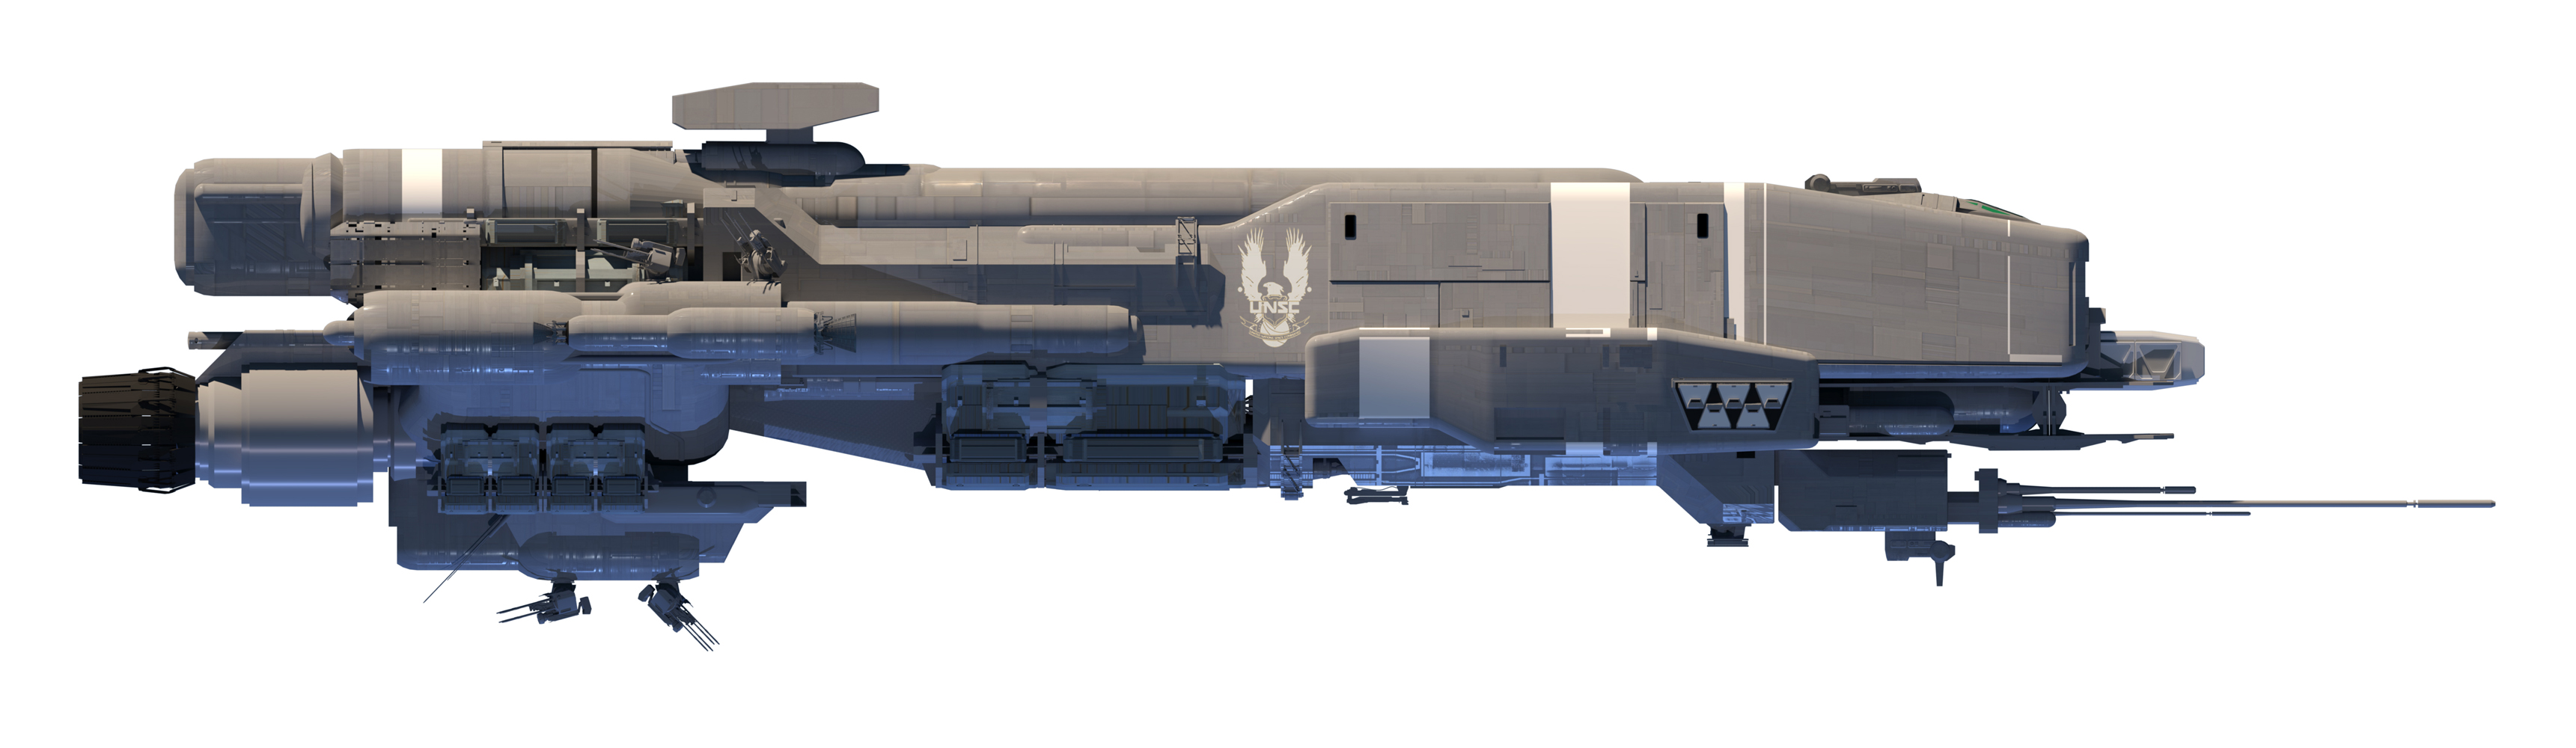 Gladius-class corvette concept (Isaac Hannaford).jpg